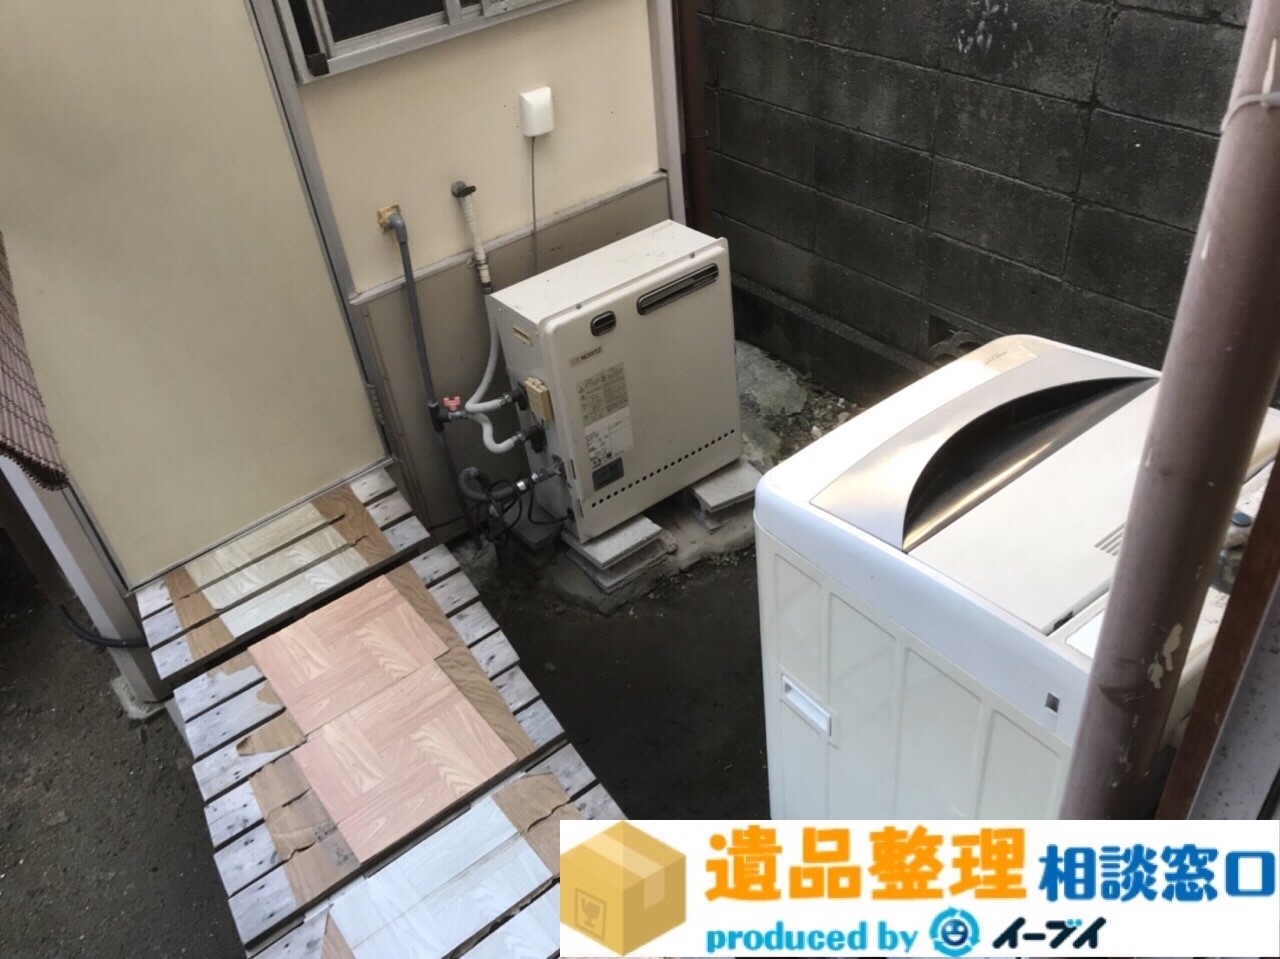 京都府京田辺市で遺品整理に伴い植木鉢や洗濯機の処分をしました。のアイキャッチ